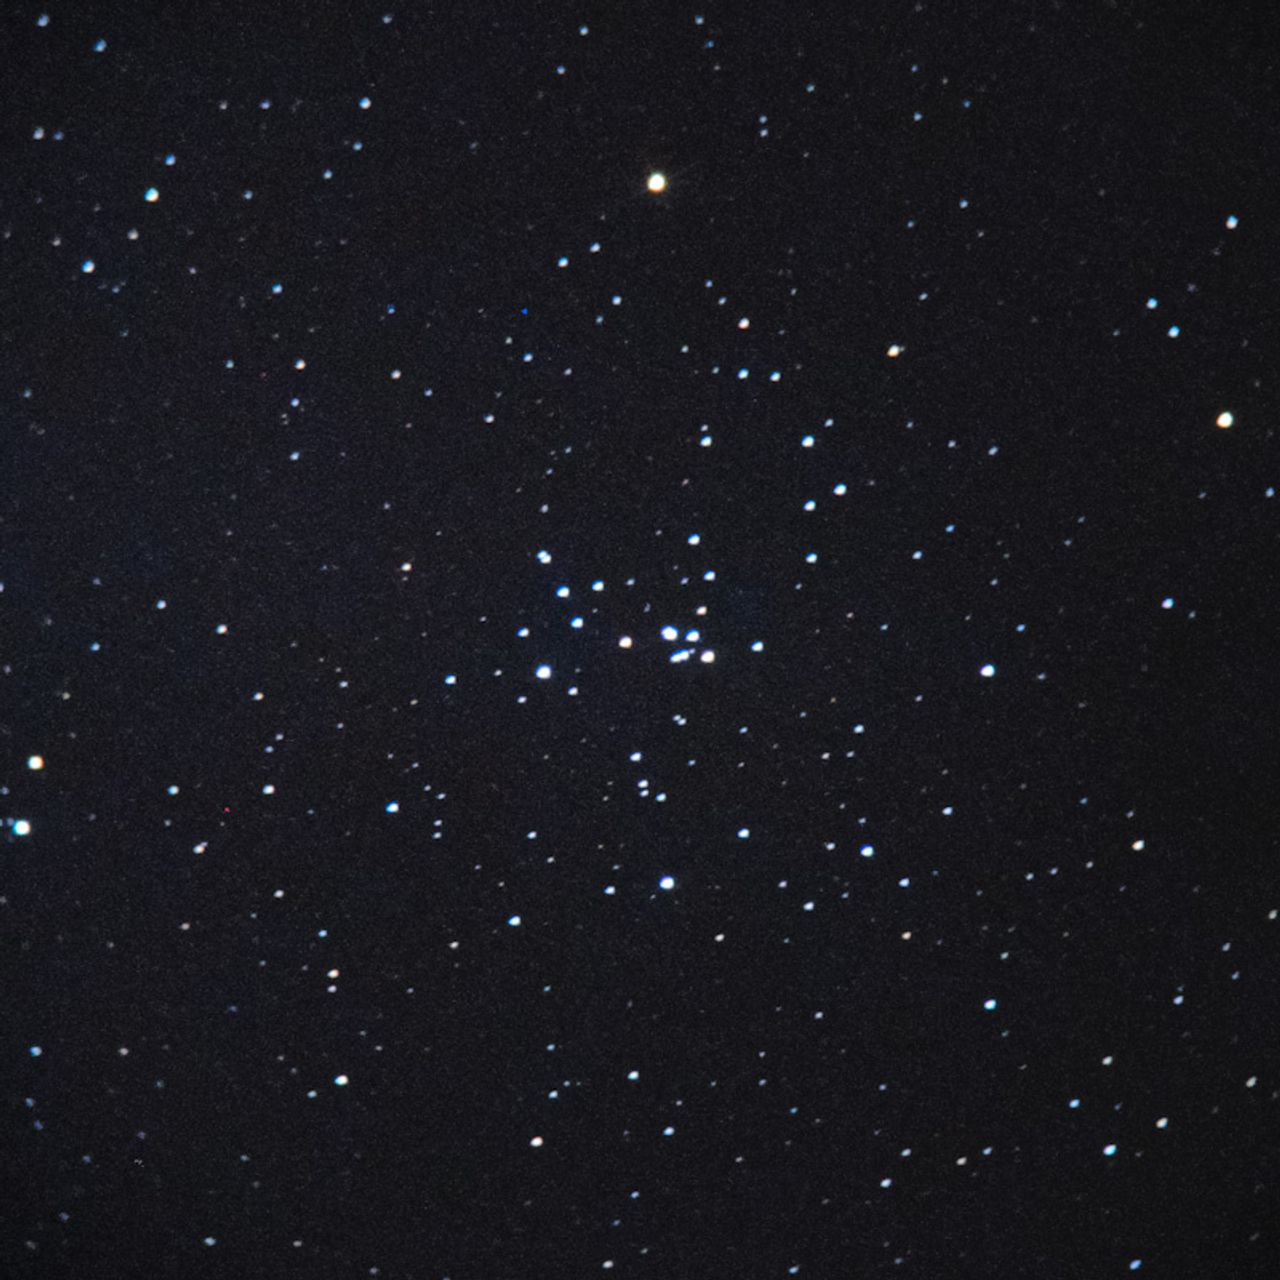 NGC2281